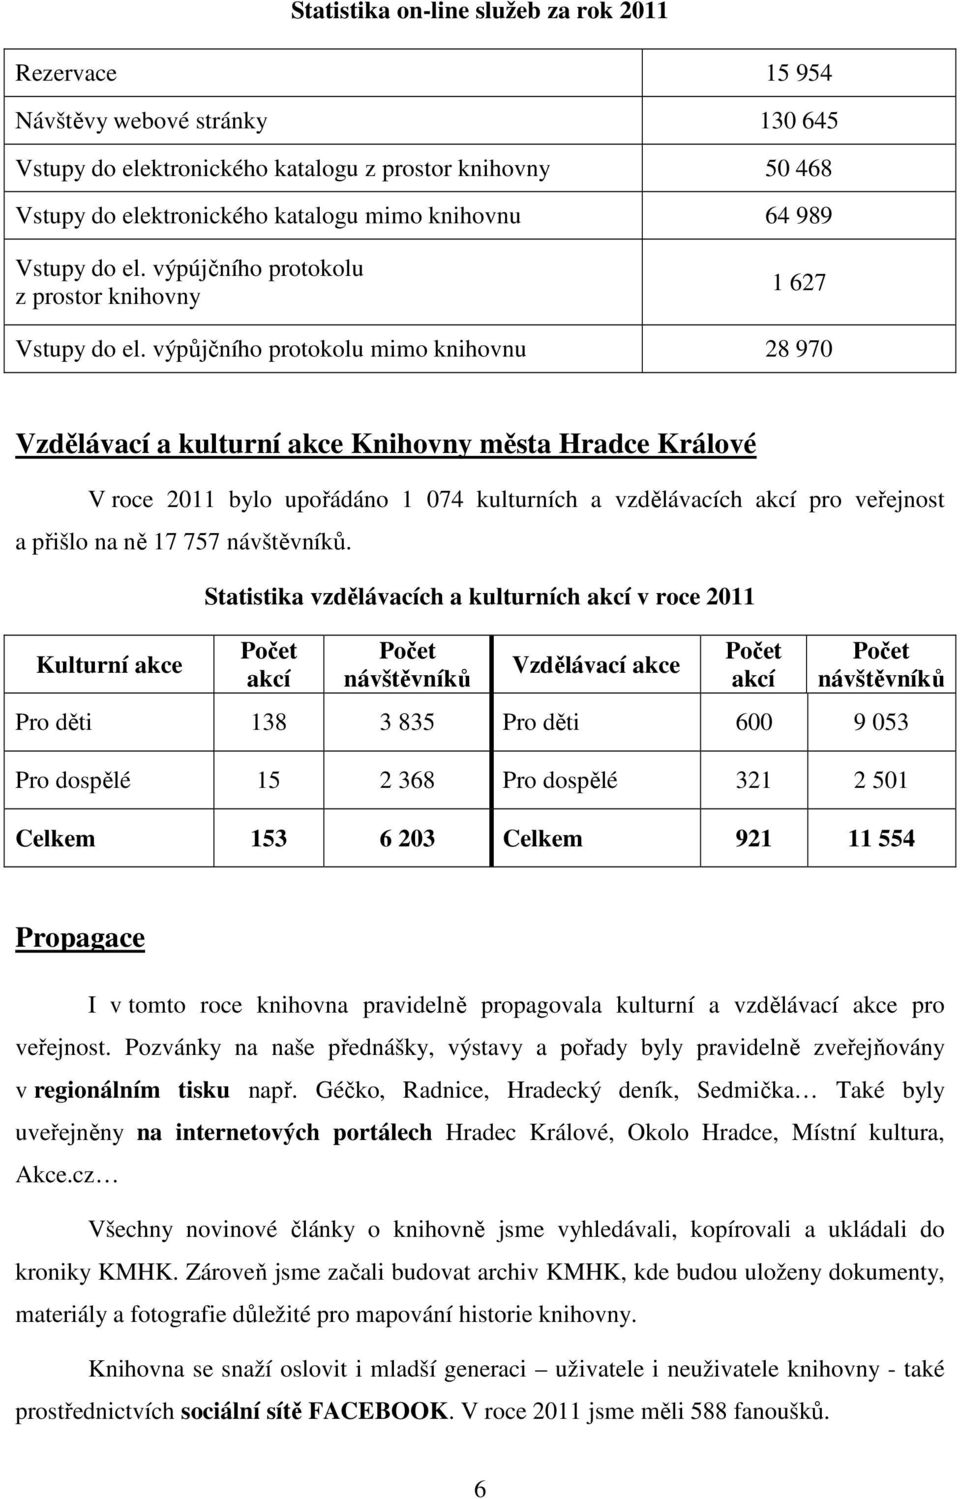 výpůjčního protokolu mimo knihovnu 28 970 Vzdělávací a kulturní akce Knihovny města Hradce Králové V roce 2011 bylo upořádáno 1 074 kulturních a vzdělávacích akcí pro veřejnost a přišlo na ně 17 757